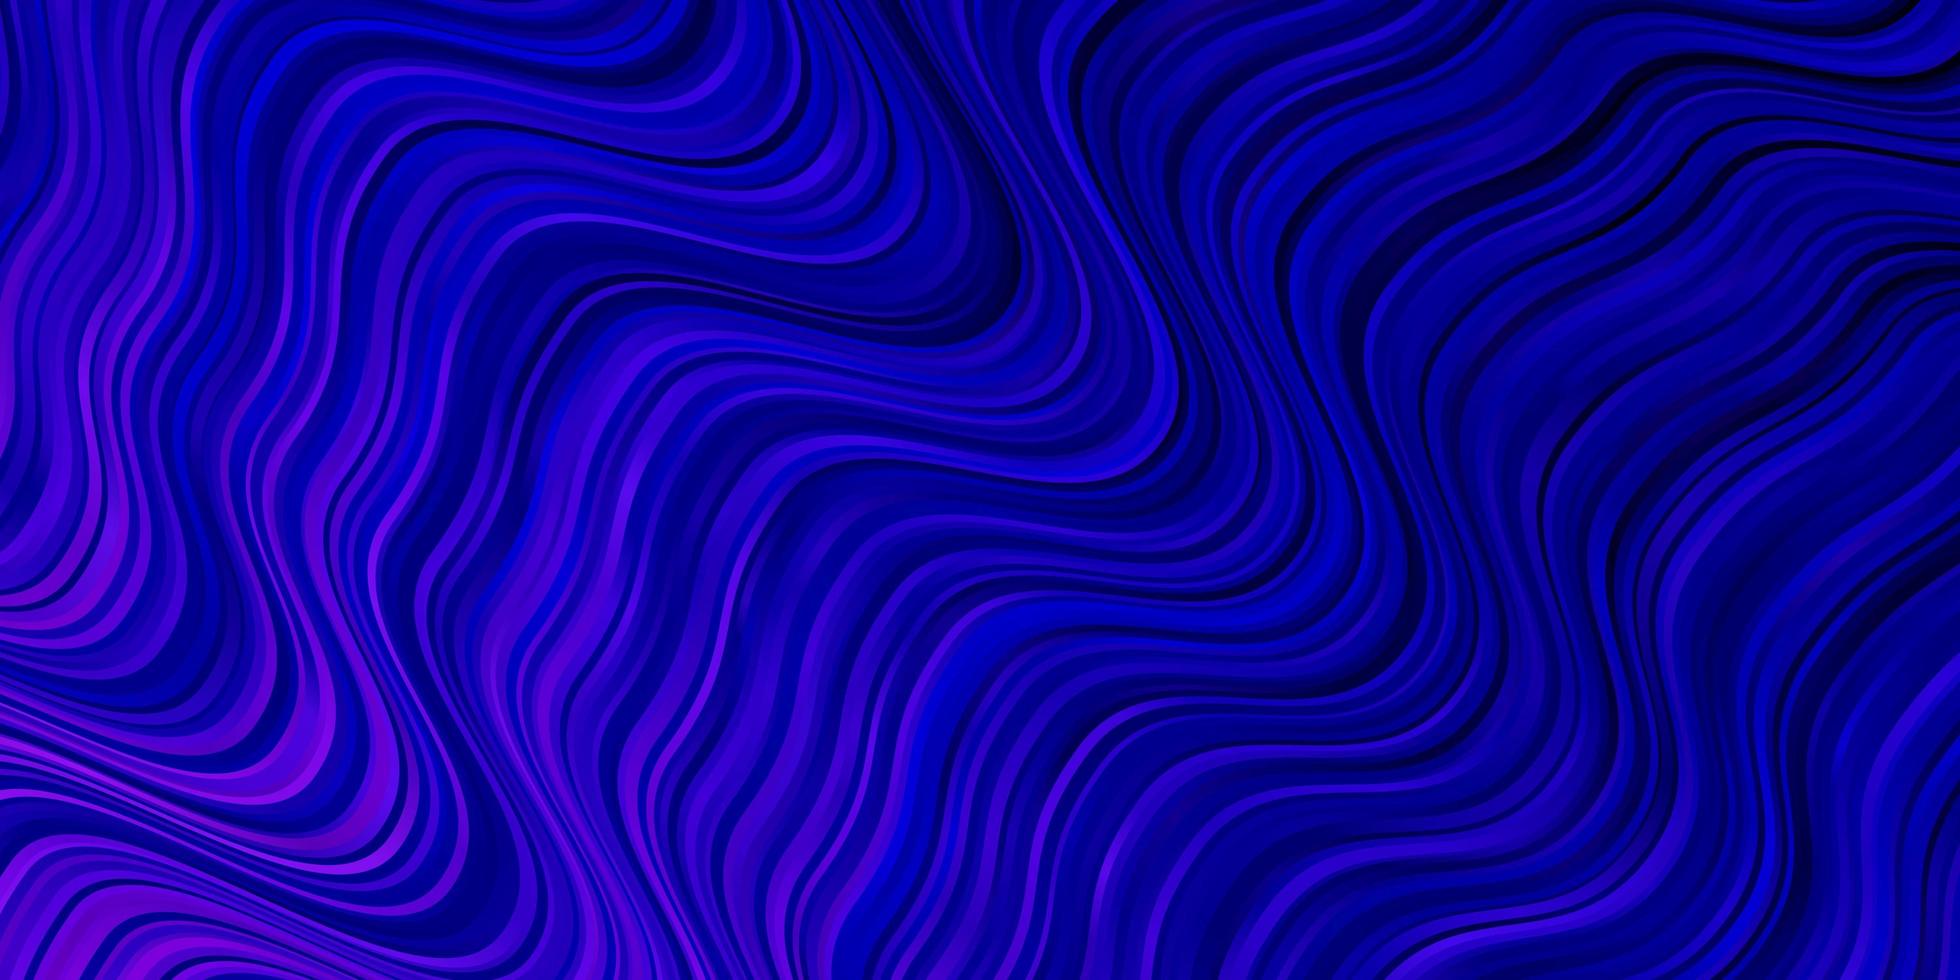 pano de fundo vector rosa e azul escuro com linhas dobradas.